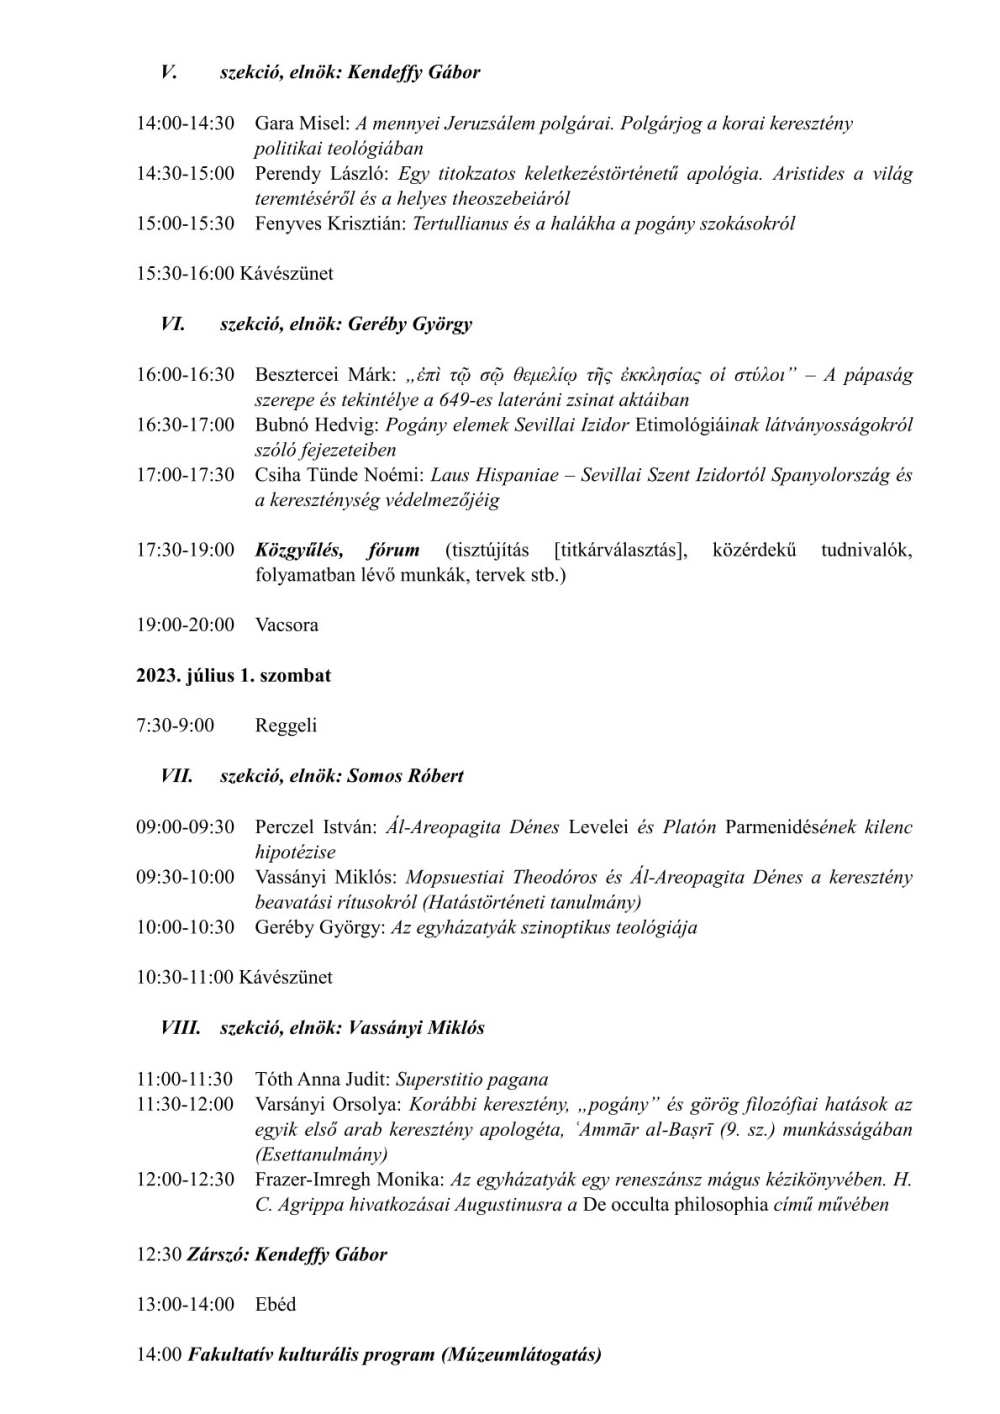 A Magyar Patrisztikai Társaság XXII. országos konferenciájának programja, Nagykanizsa, 2023. június 29. – július 1.